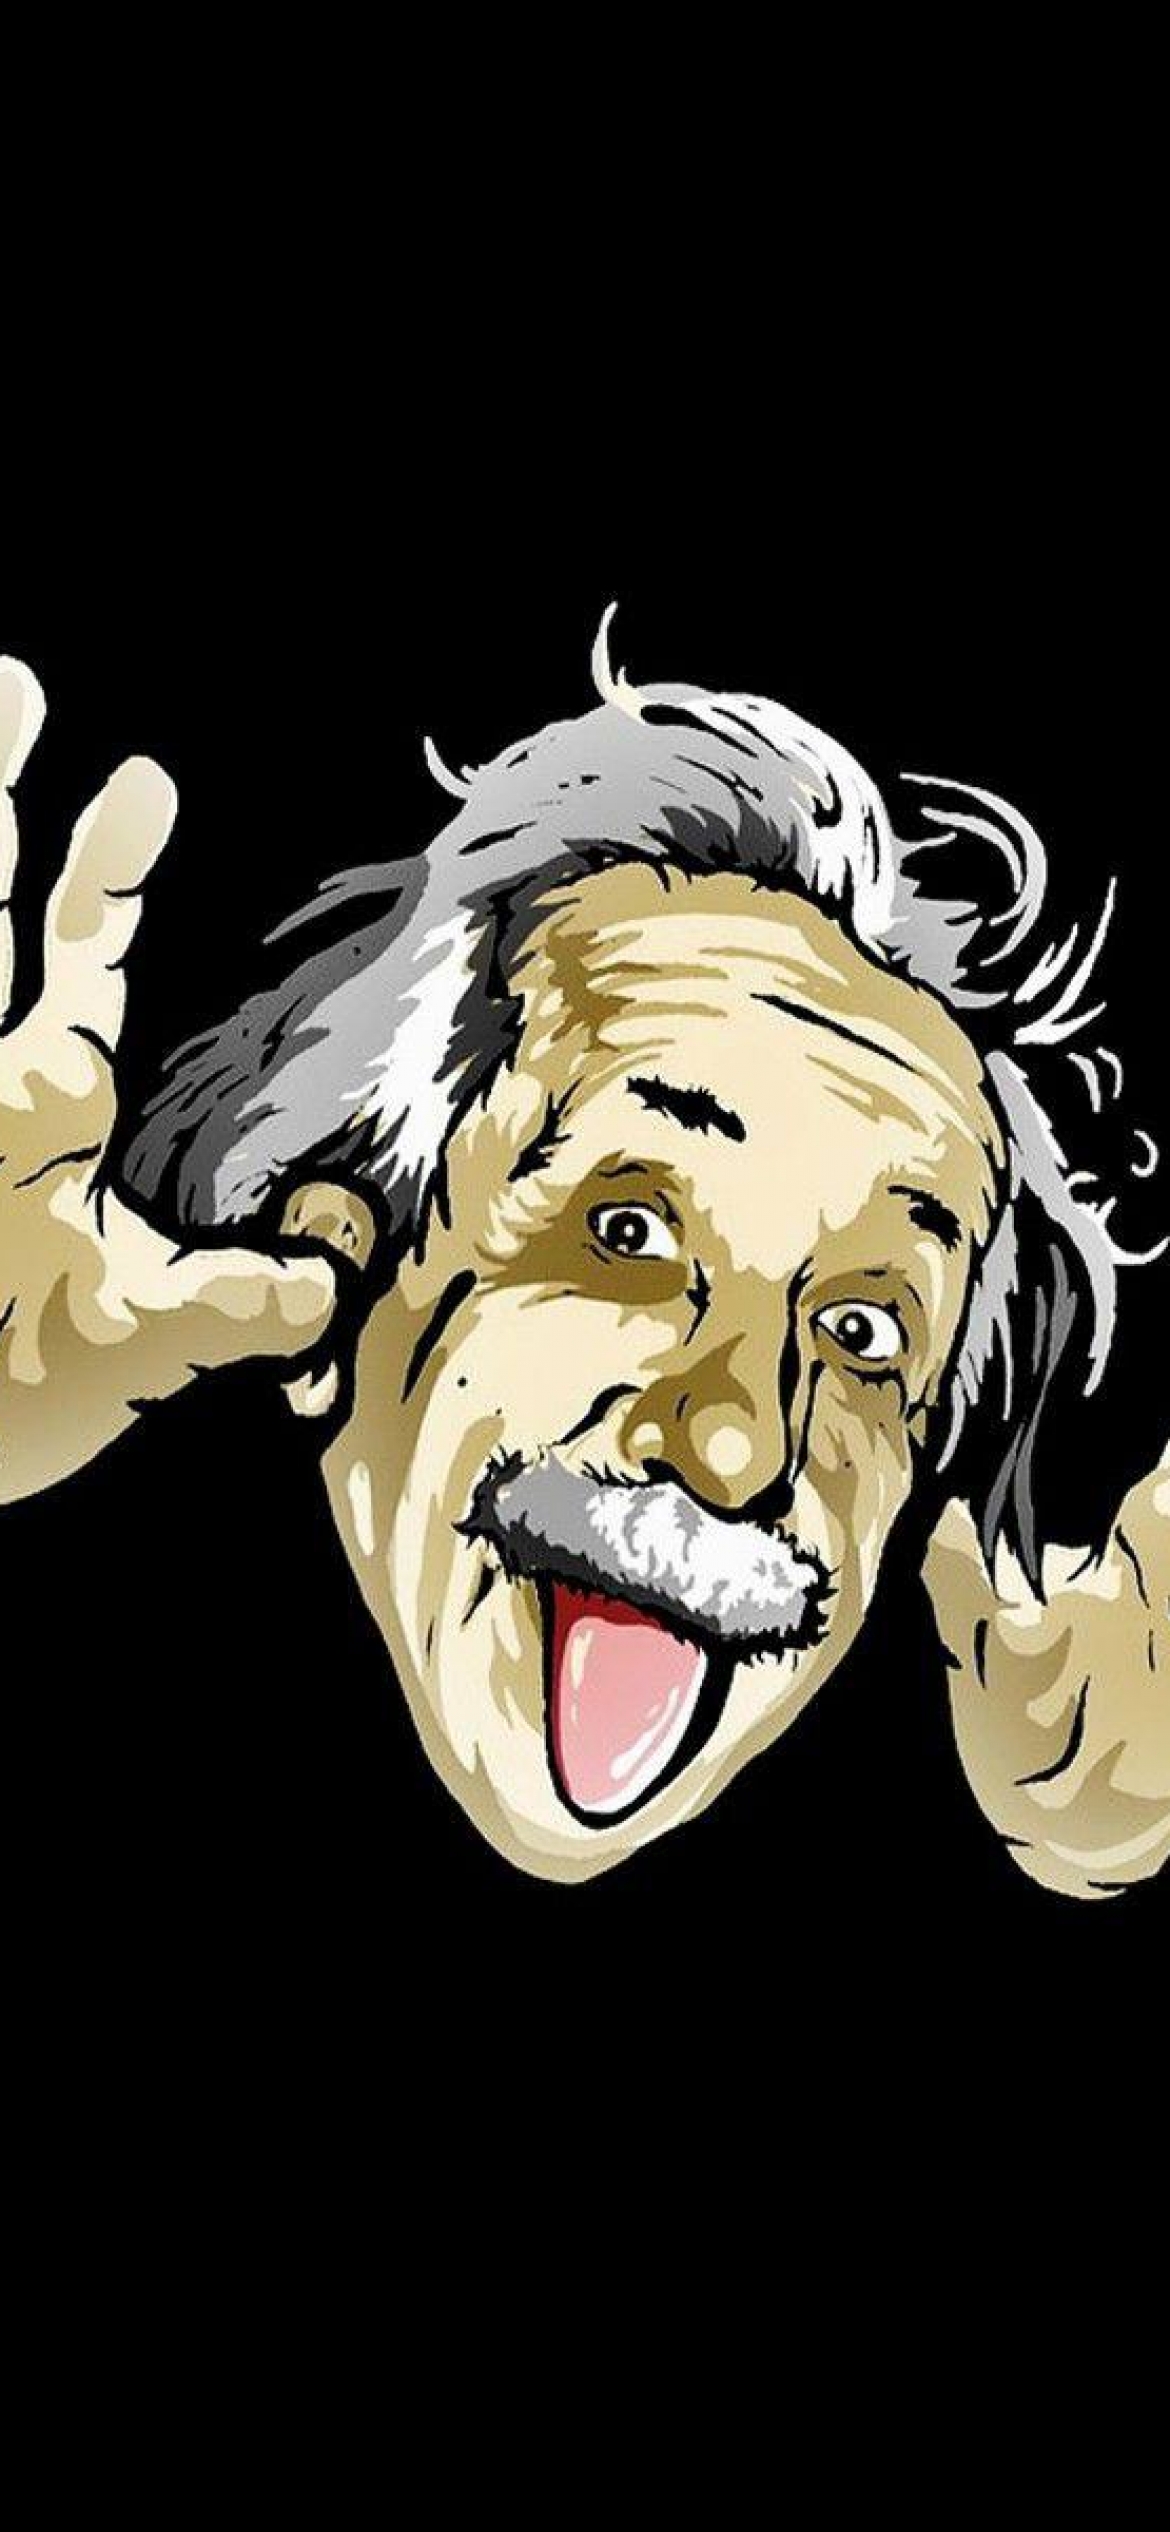 Download Albert Einstein 2020 4K Minimalist iPhone Wallpaper 